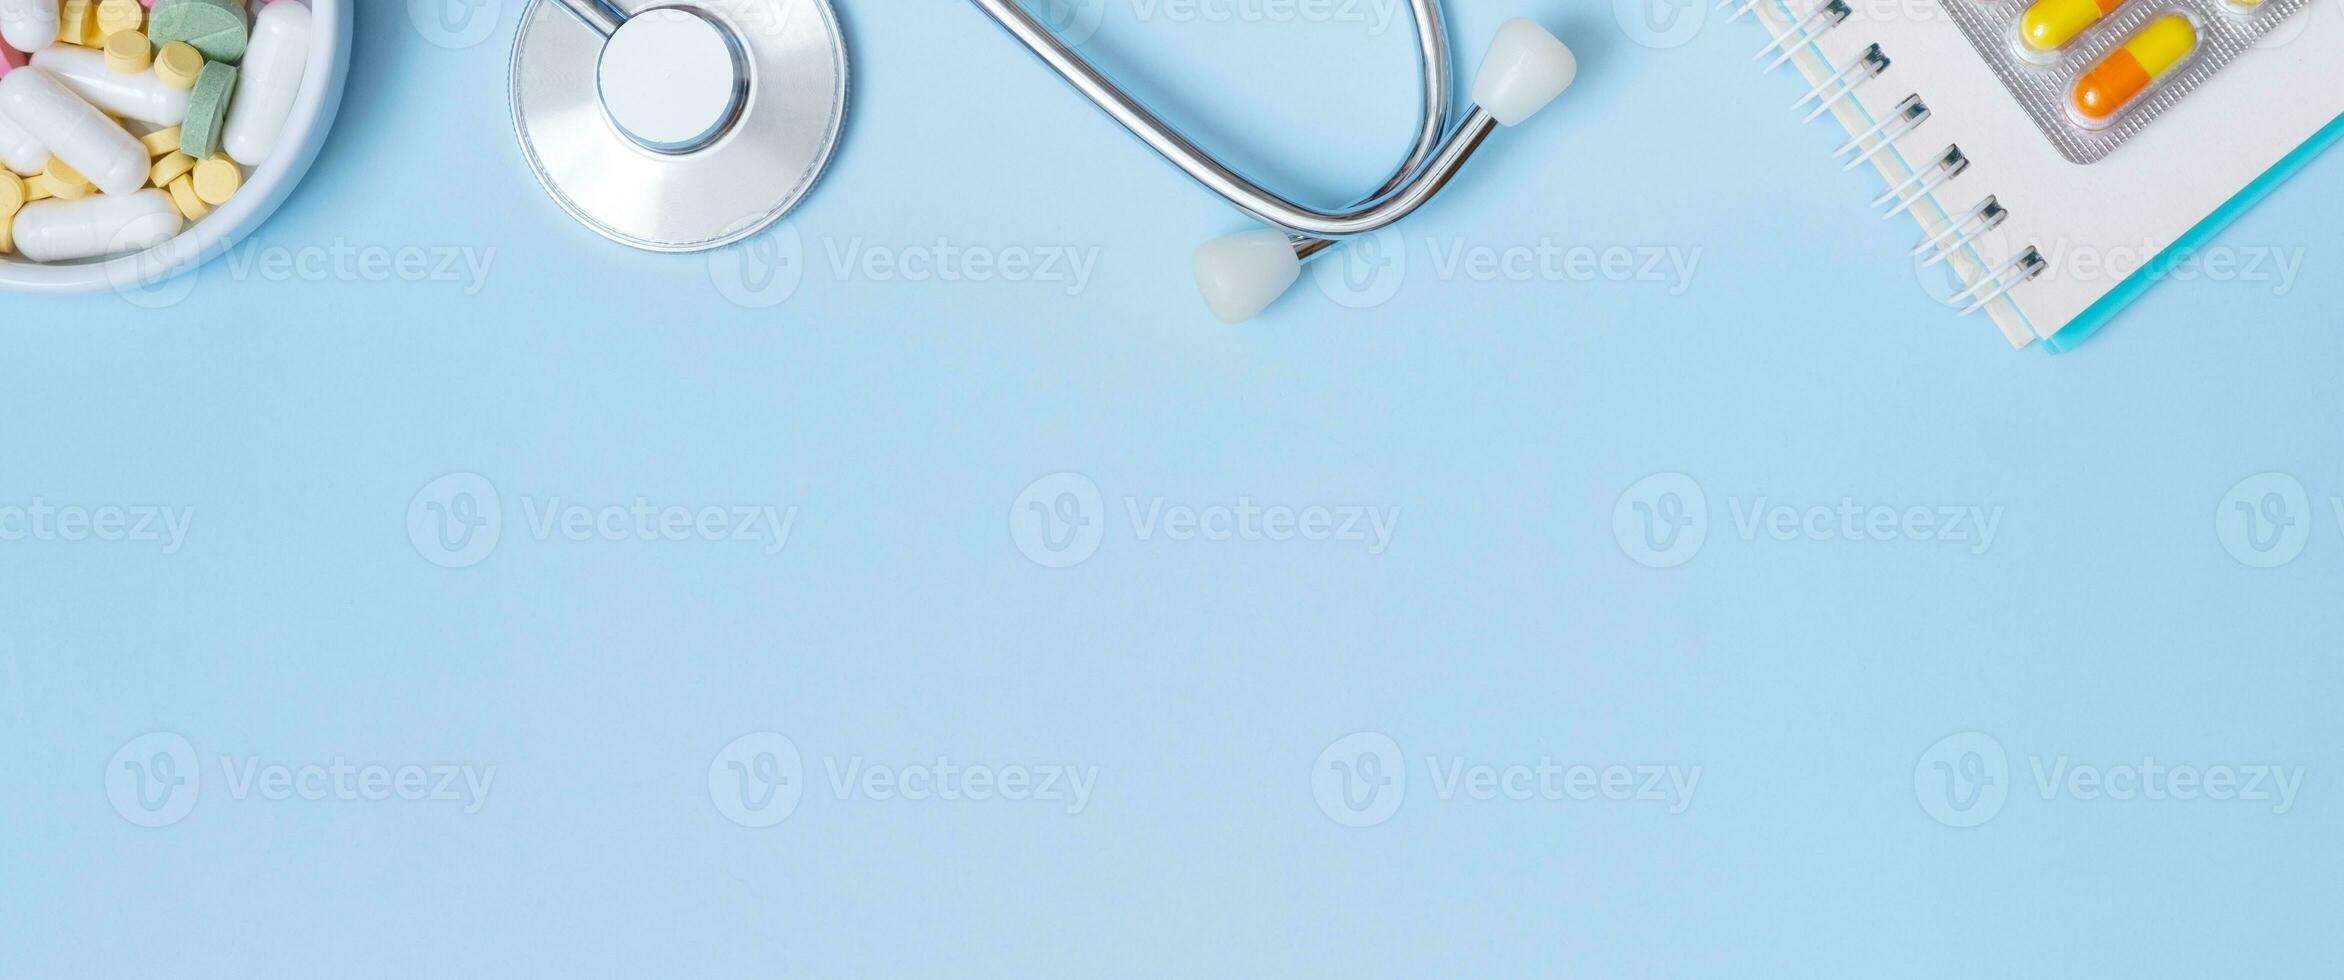 Fragment von Stethoskop, Notiz, Tabletten auf Blau Hintergrund mit Kopieren Raum. Gesundheitswesen und Medizin Banner eben legen, oben Aussicht foto